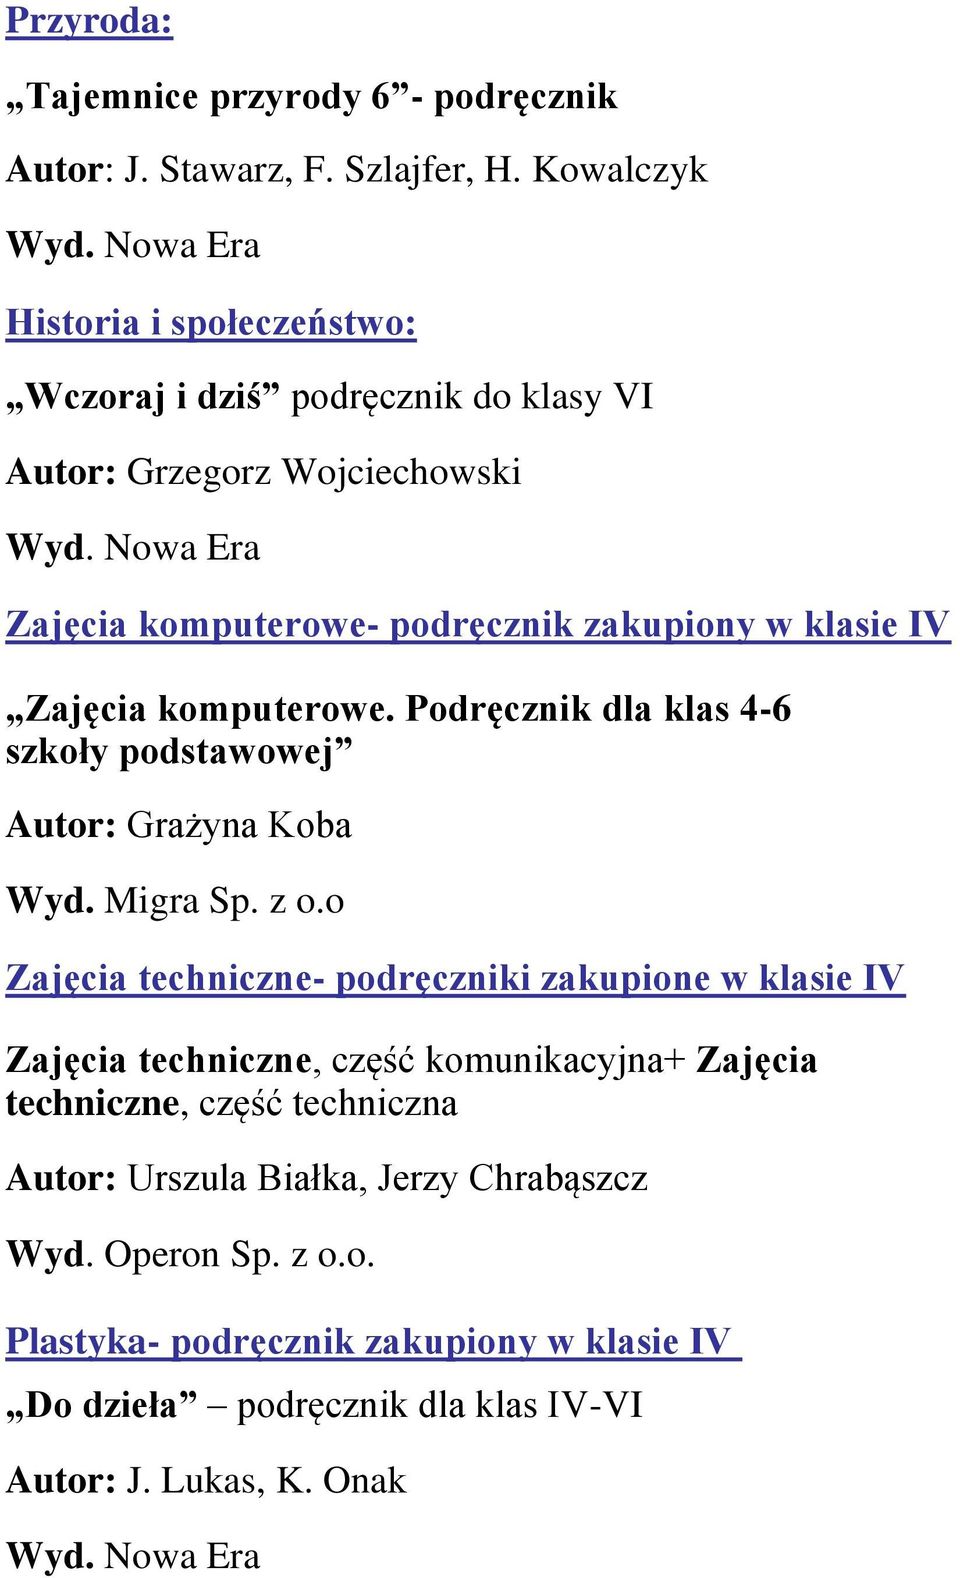 Zajęcia komputerowe. Podręcznik dla klas 4-6 szkoły podstawowej Autor: Grażyna Koba Wyd. Migra Sp. z o.